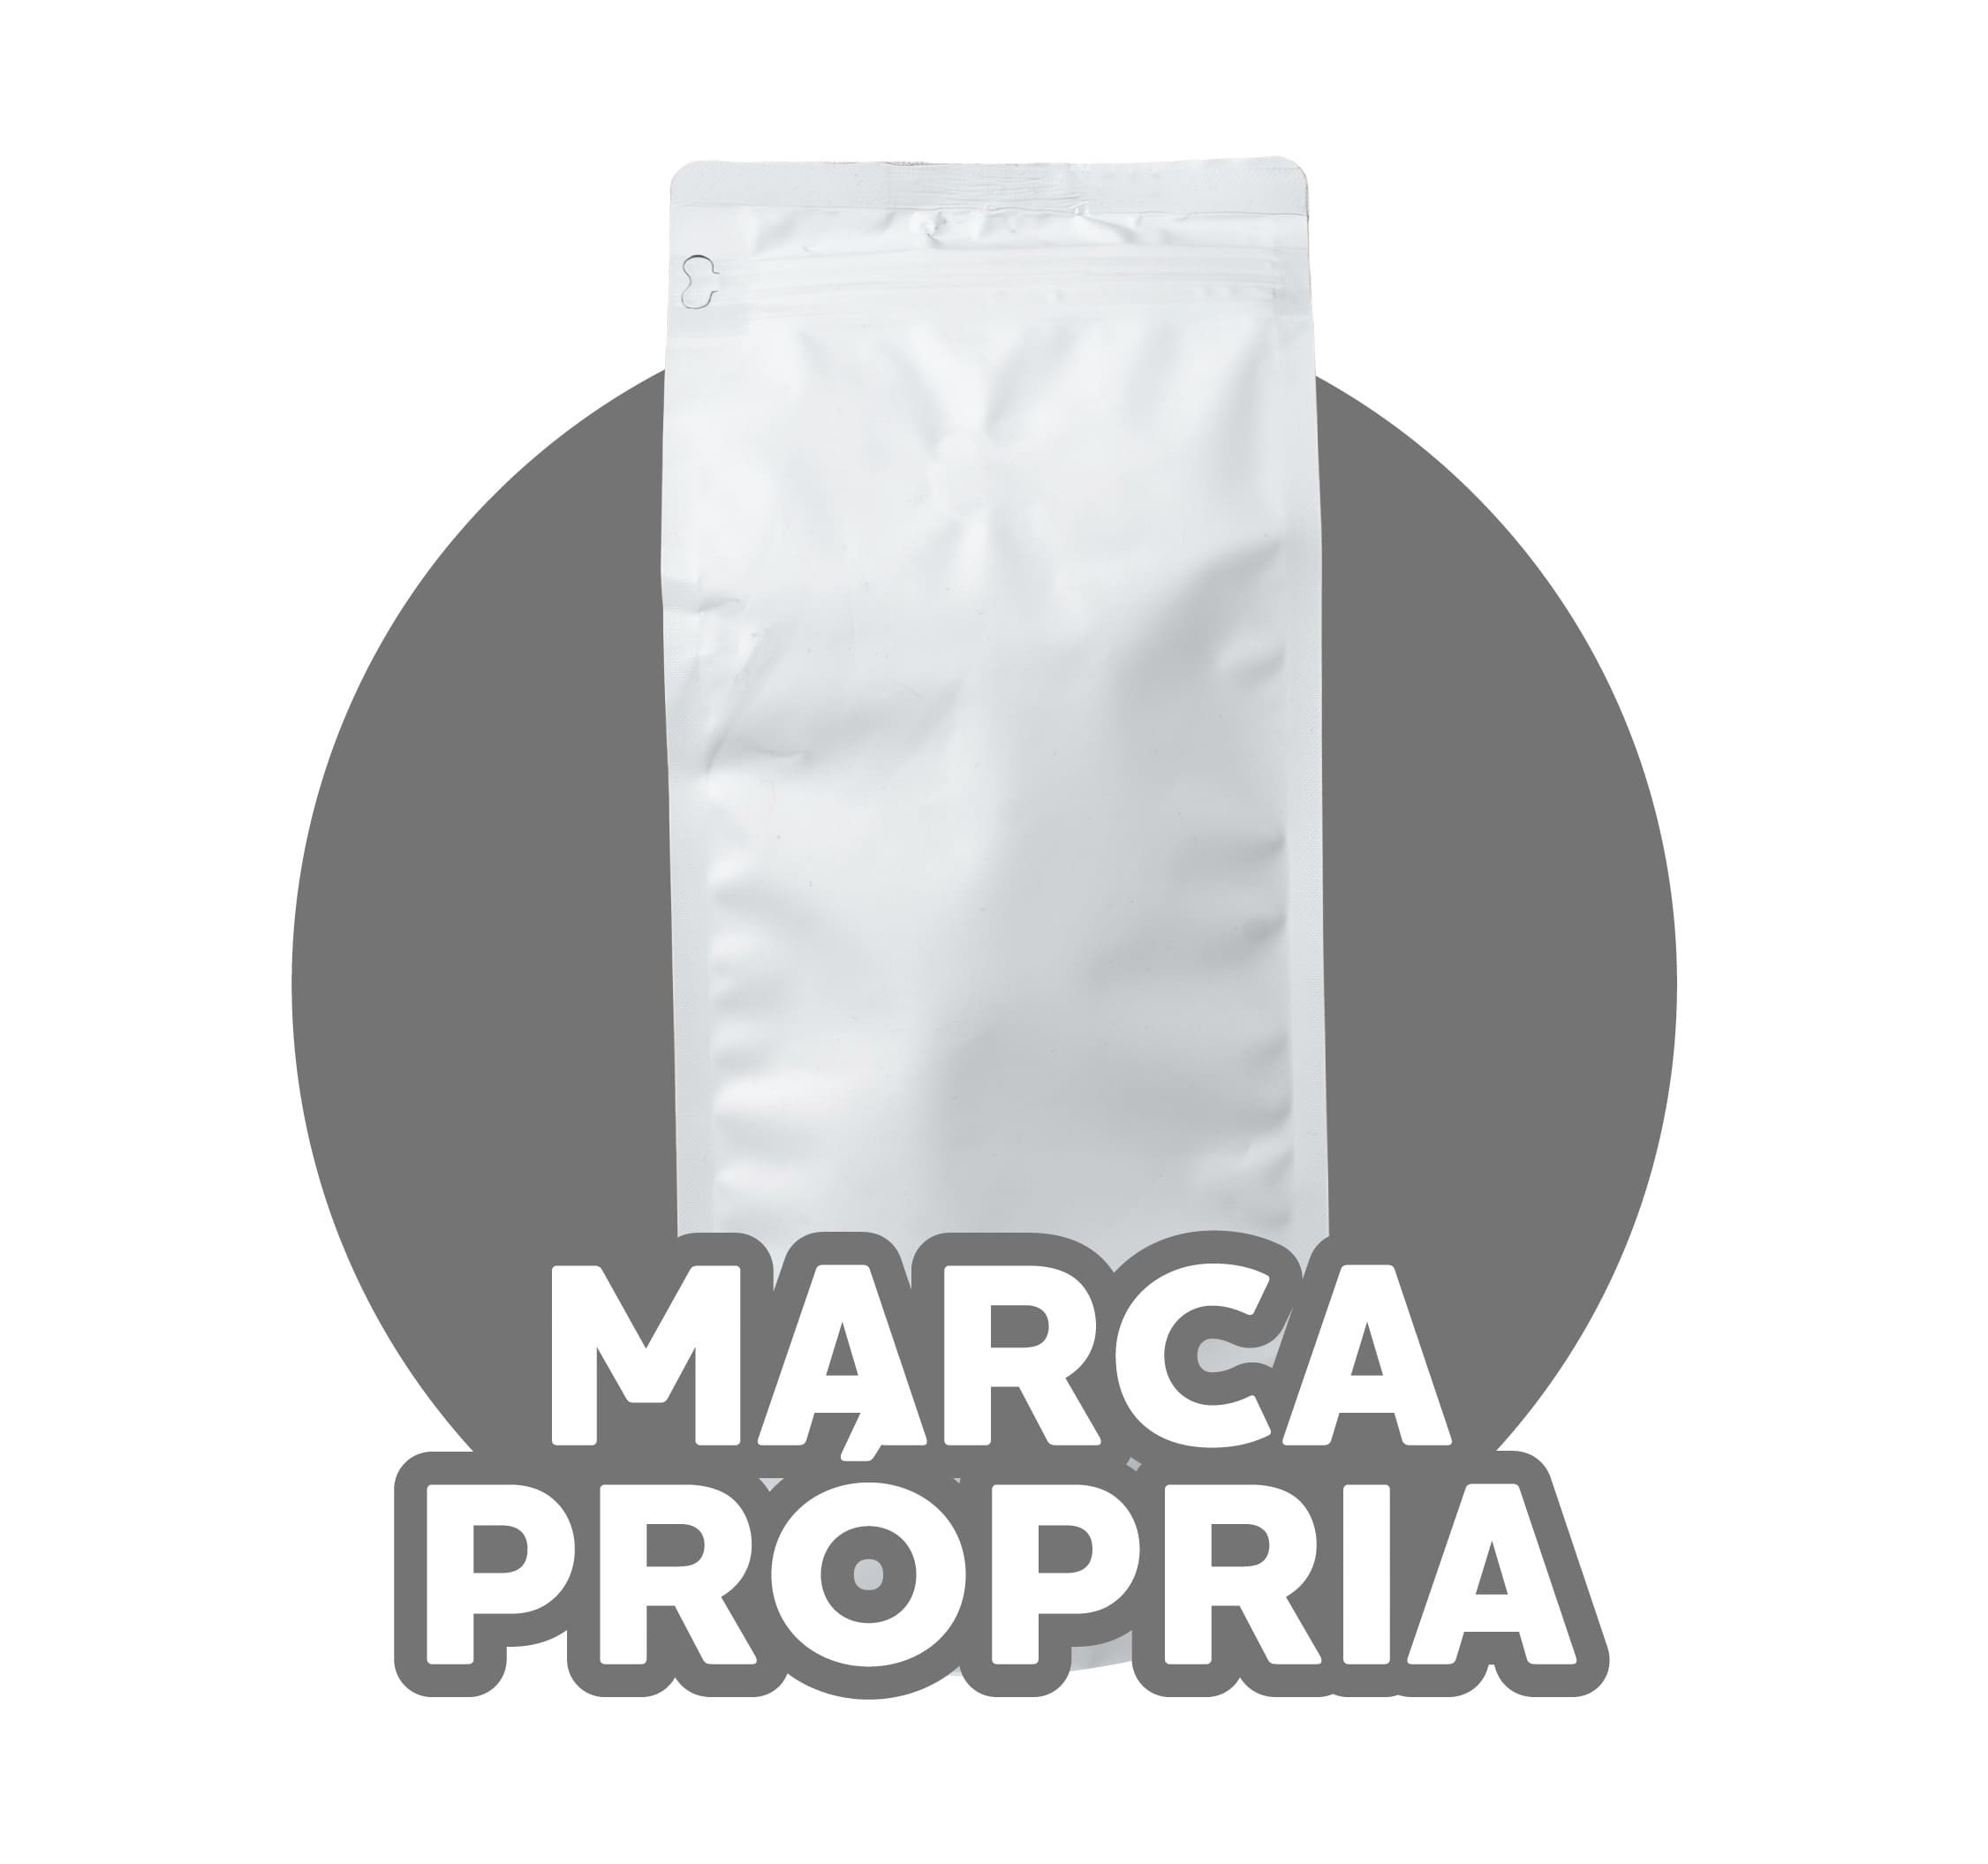 Marca Própria / Private Label